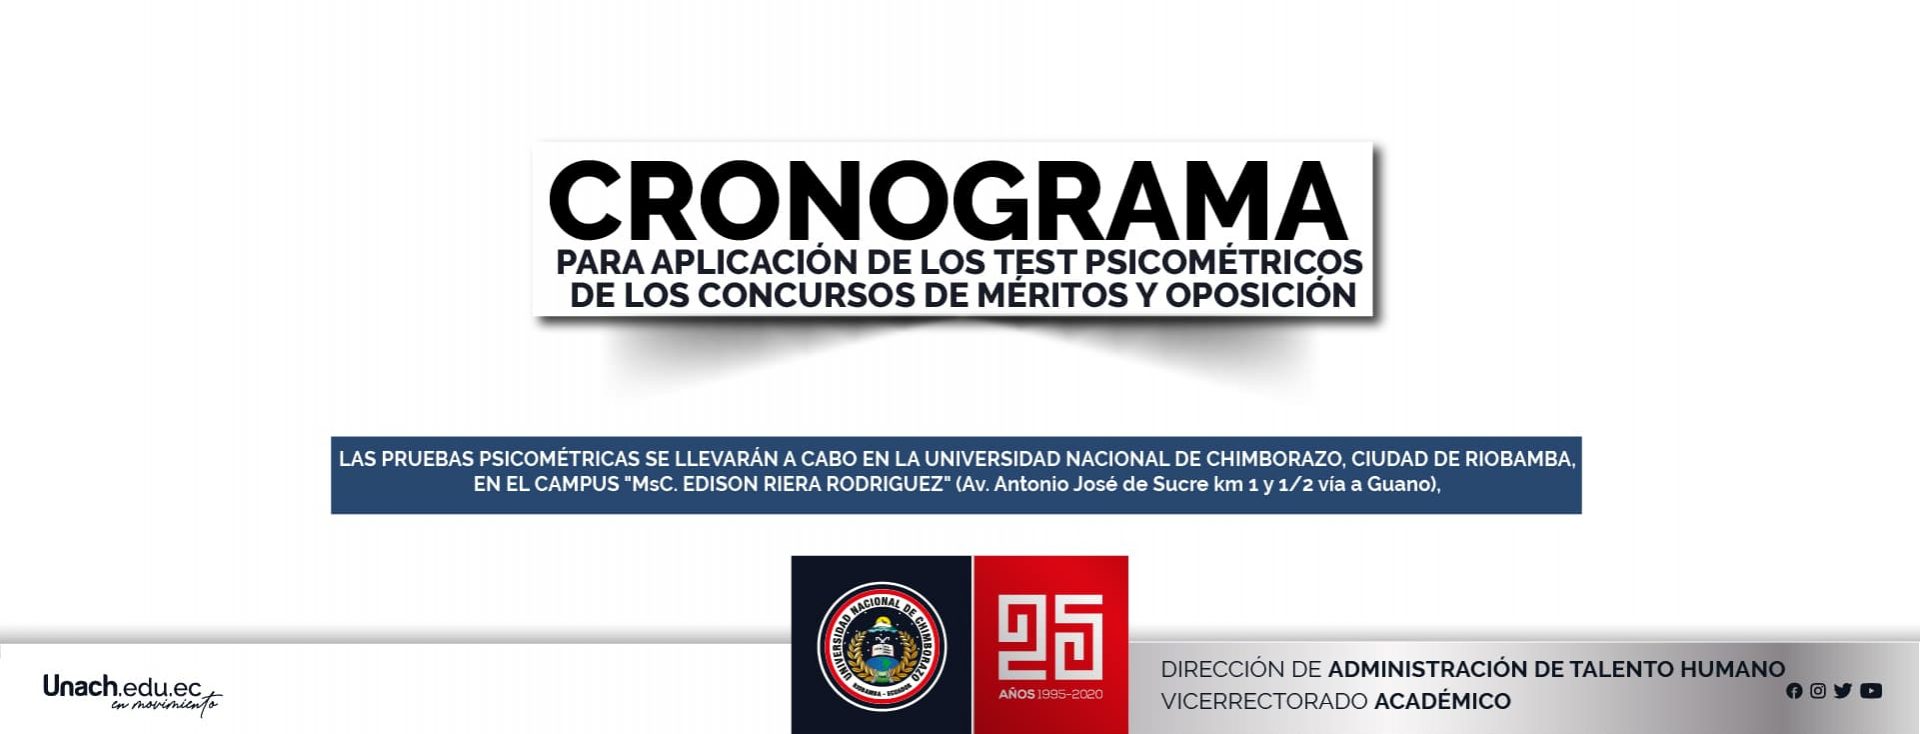 CRONOGRAMA PARA APLICACIÓN DE LOS TEST PSICOMETRICOS DE LOS CONCURSOS DE MÉRITOS Y OPOSICIÓN